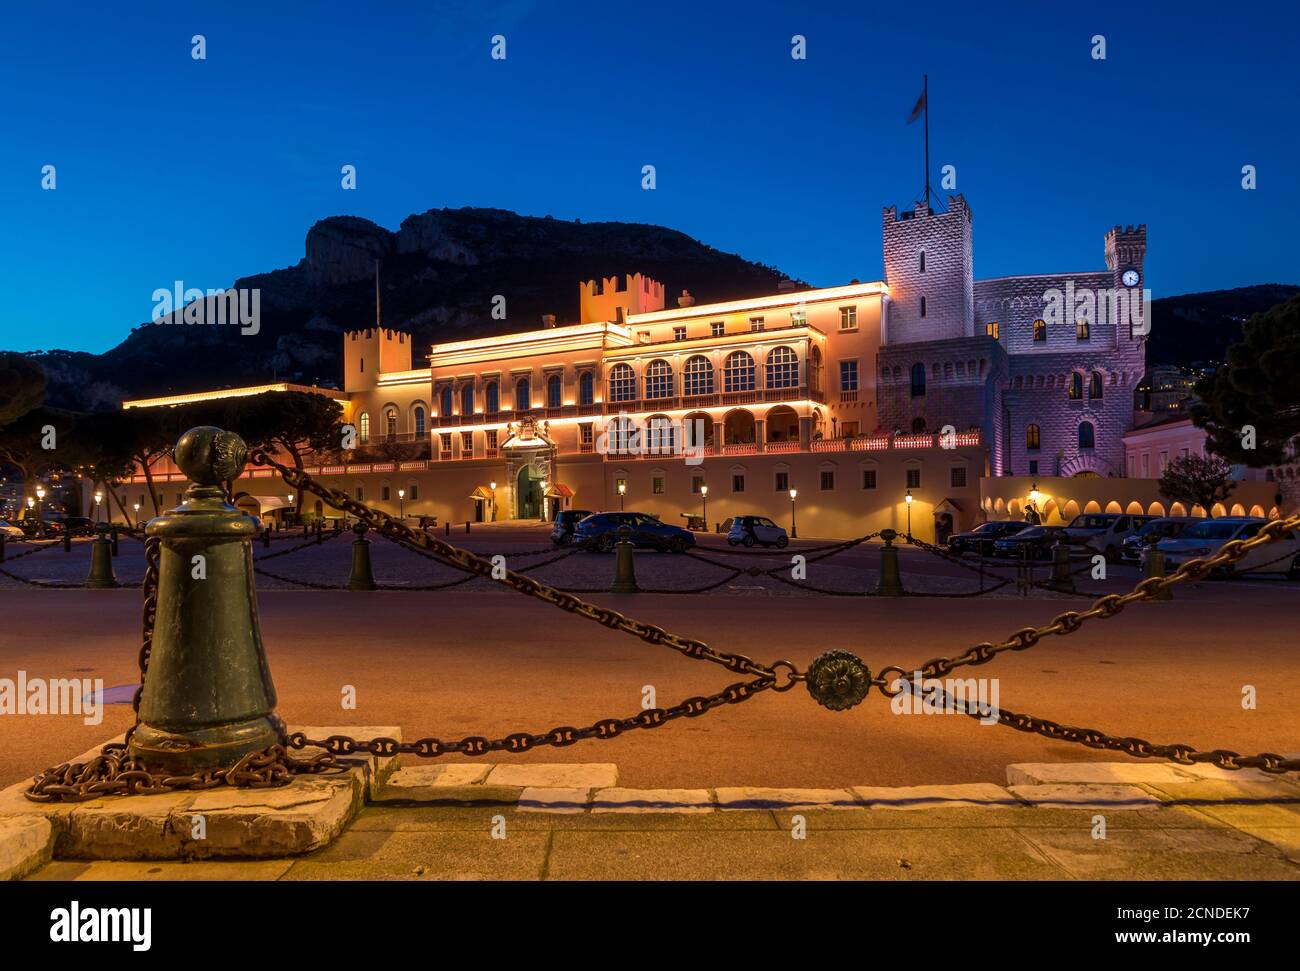 Beleuchteter Prinzenpalast in der Abenddämmerung, Monaco, Cote d'Azur, Französische Riviera, Mittelmeer, Europa Stockfoto